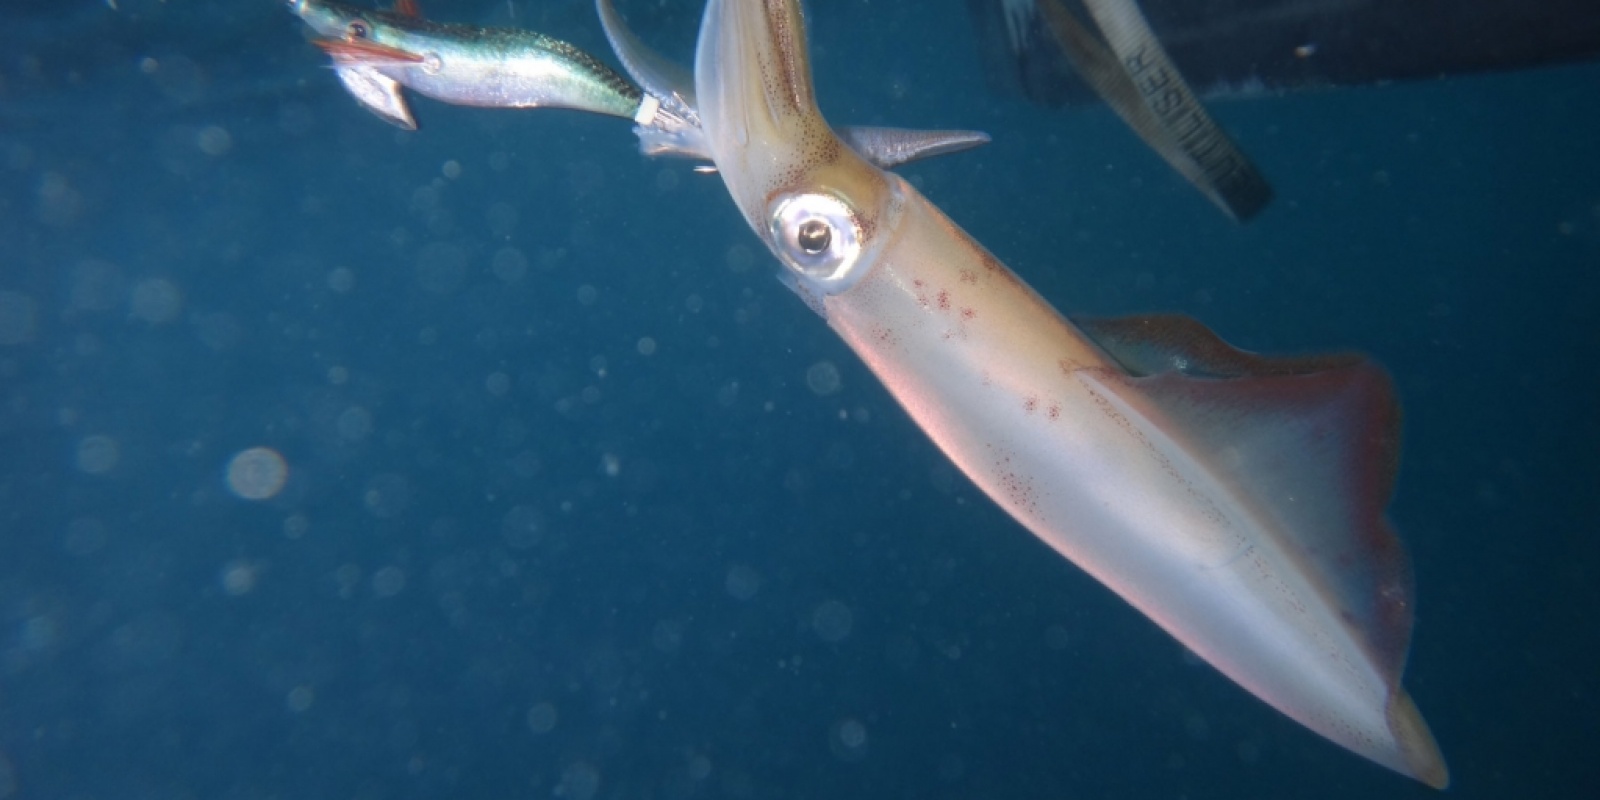 Le calamar se pêche à la turlutte également appelée calamarette ou totenière